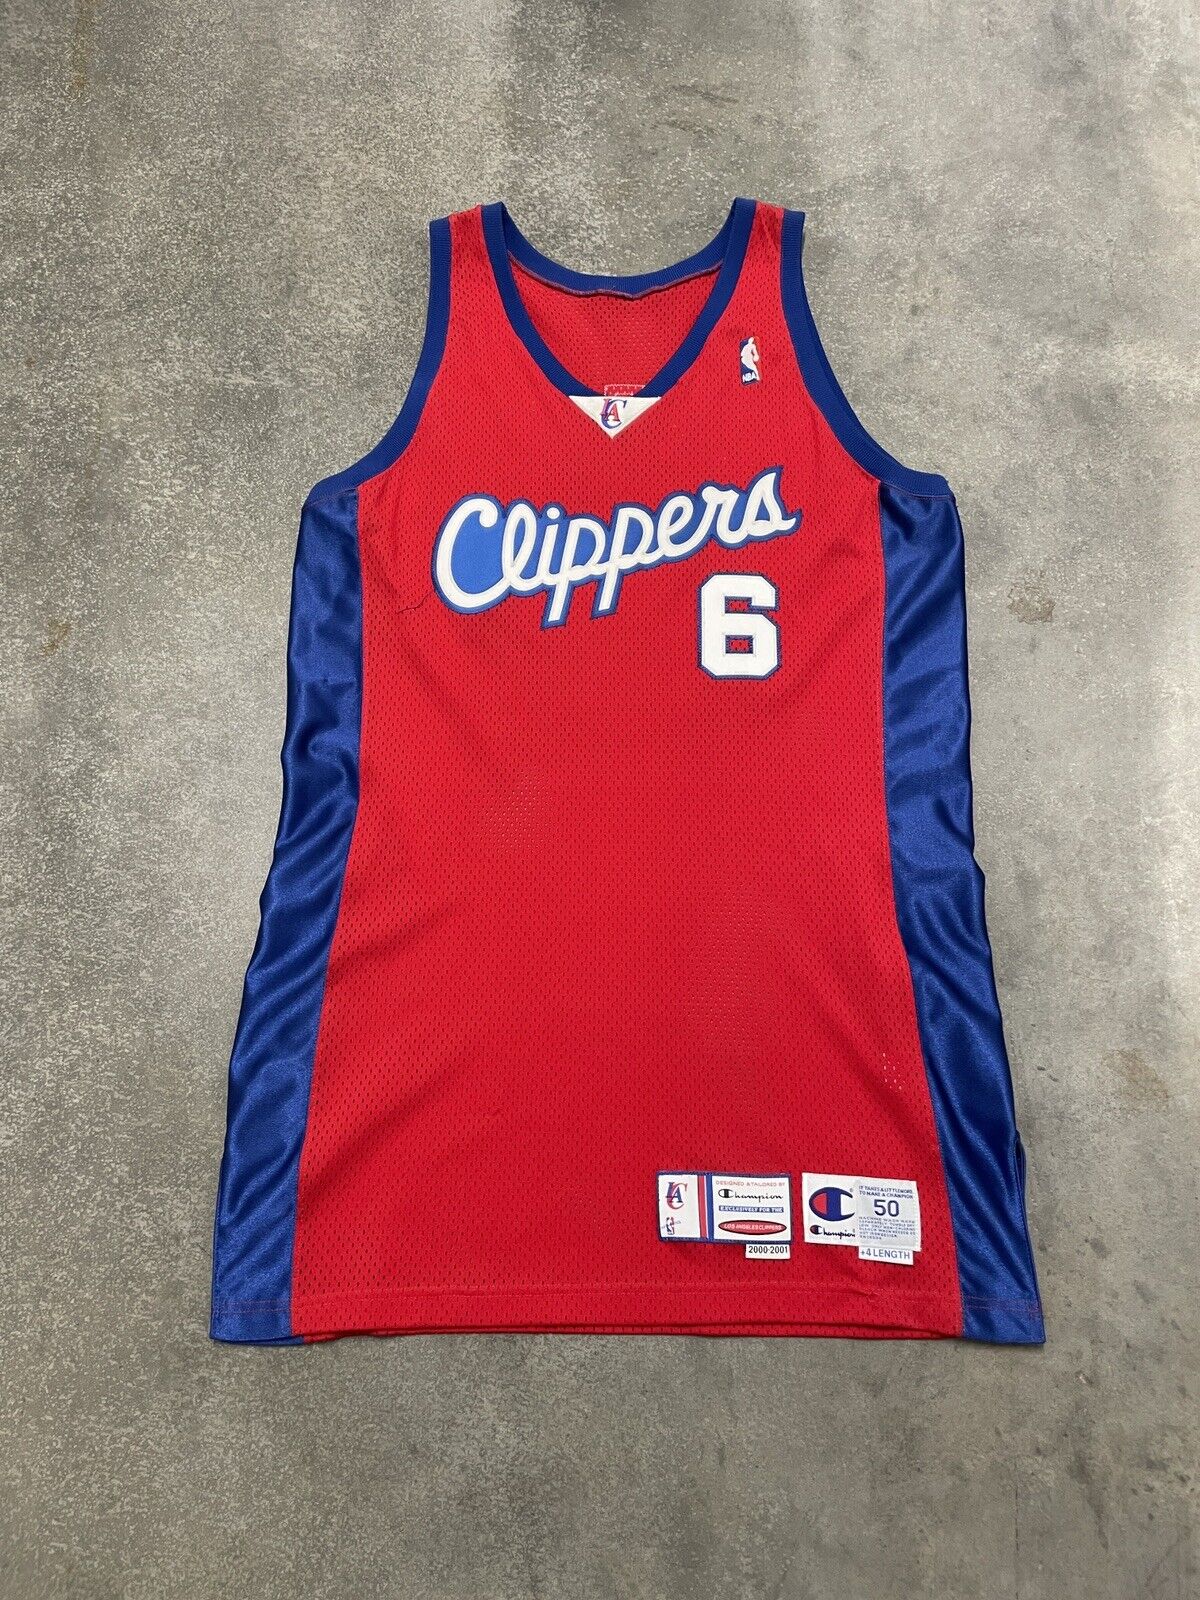 Champion LA Clippers Pro Cut Jersey Authentic NBA Basketball Rare Stitch USA